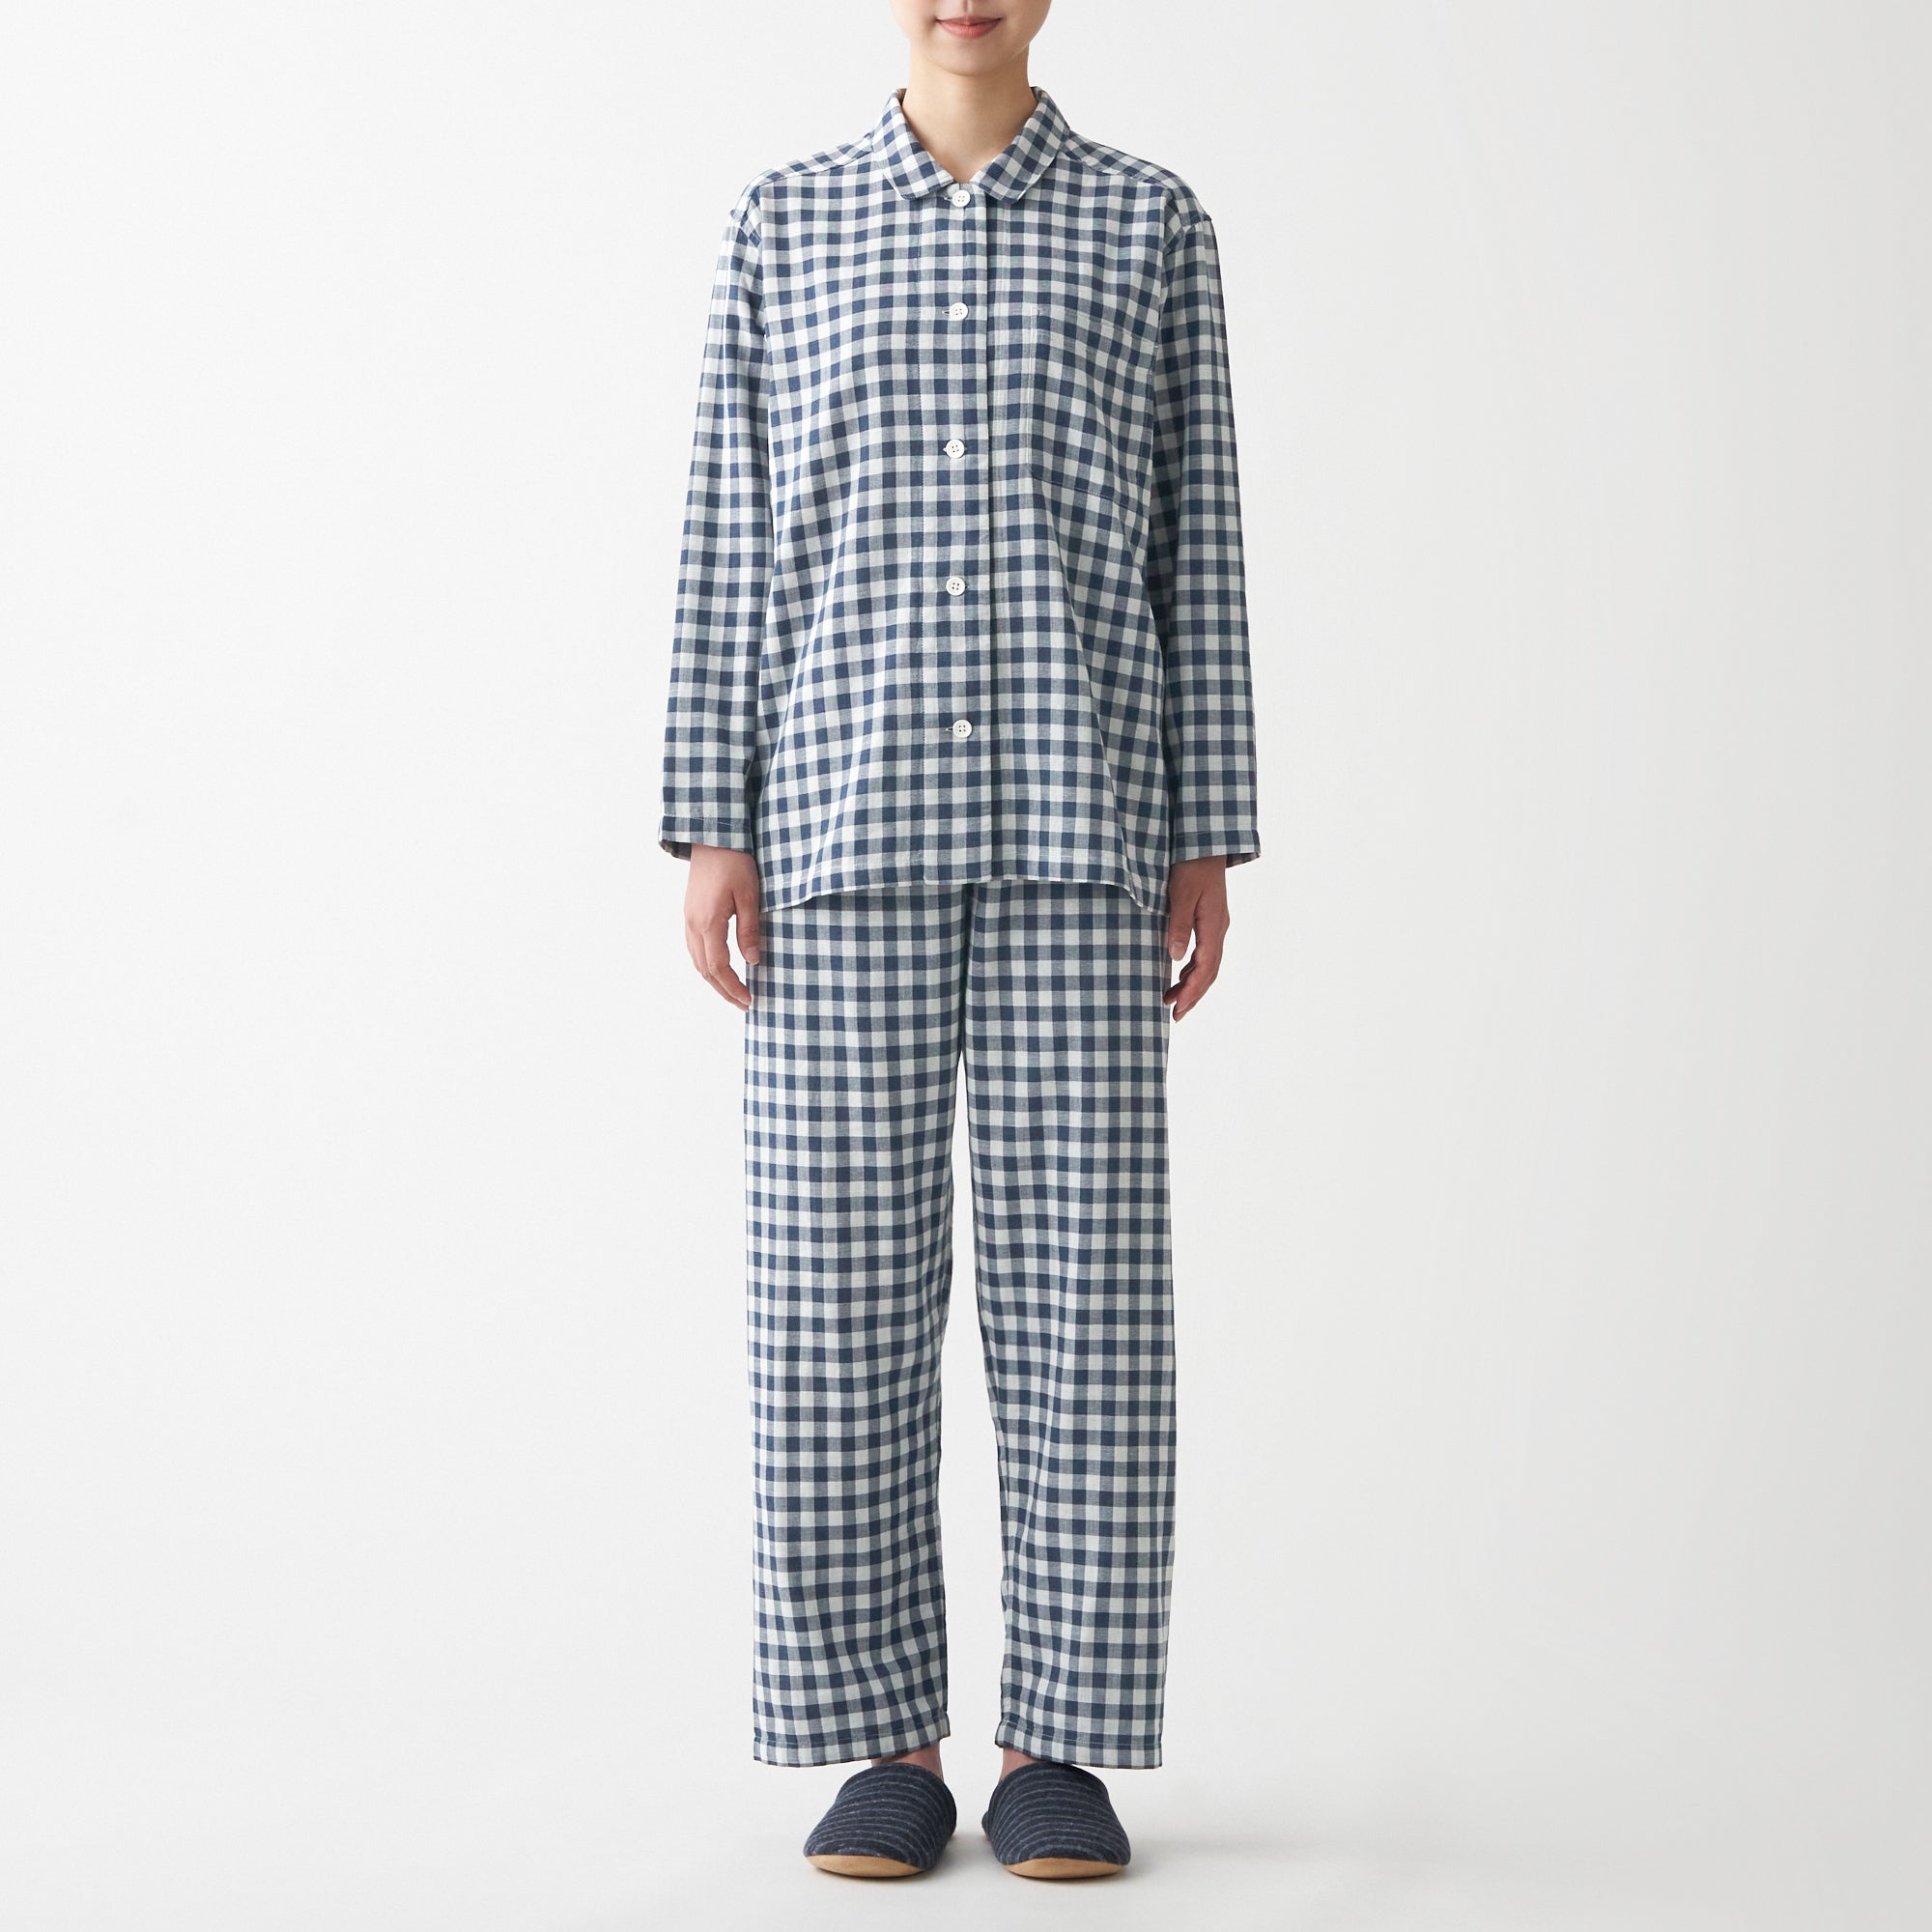 Women Organic Cotton Side Seamless Pajamas